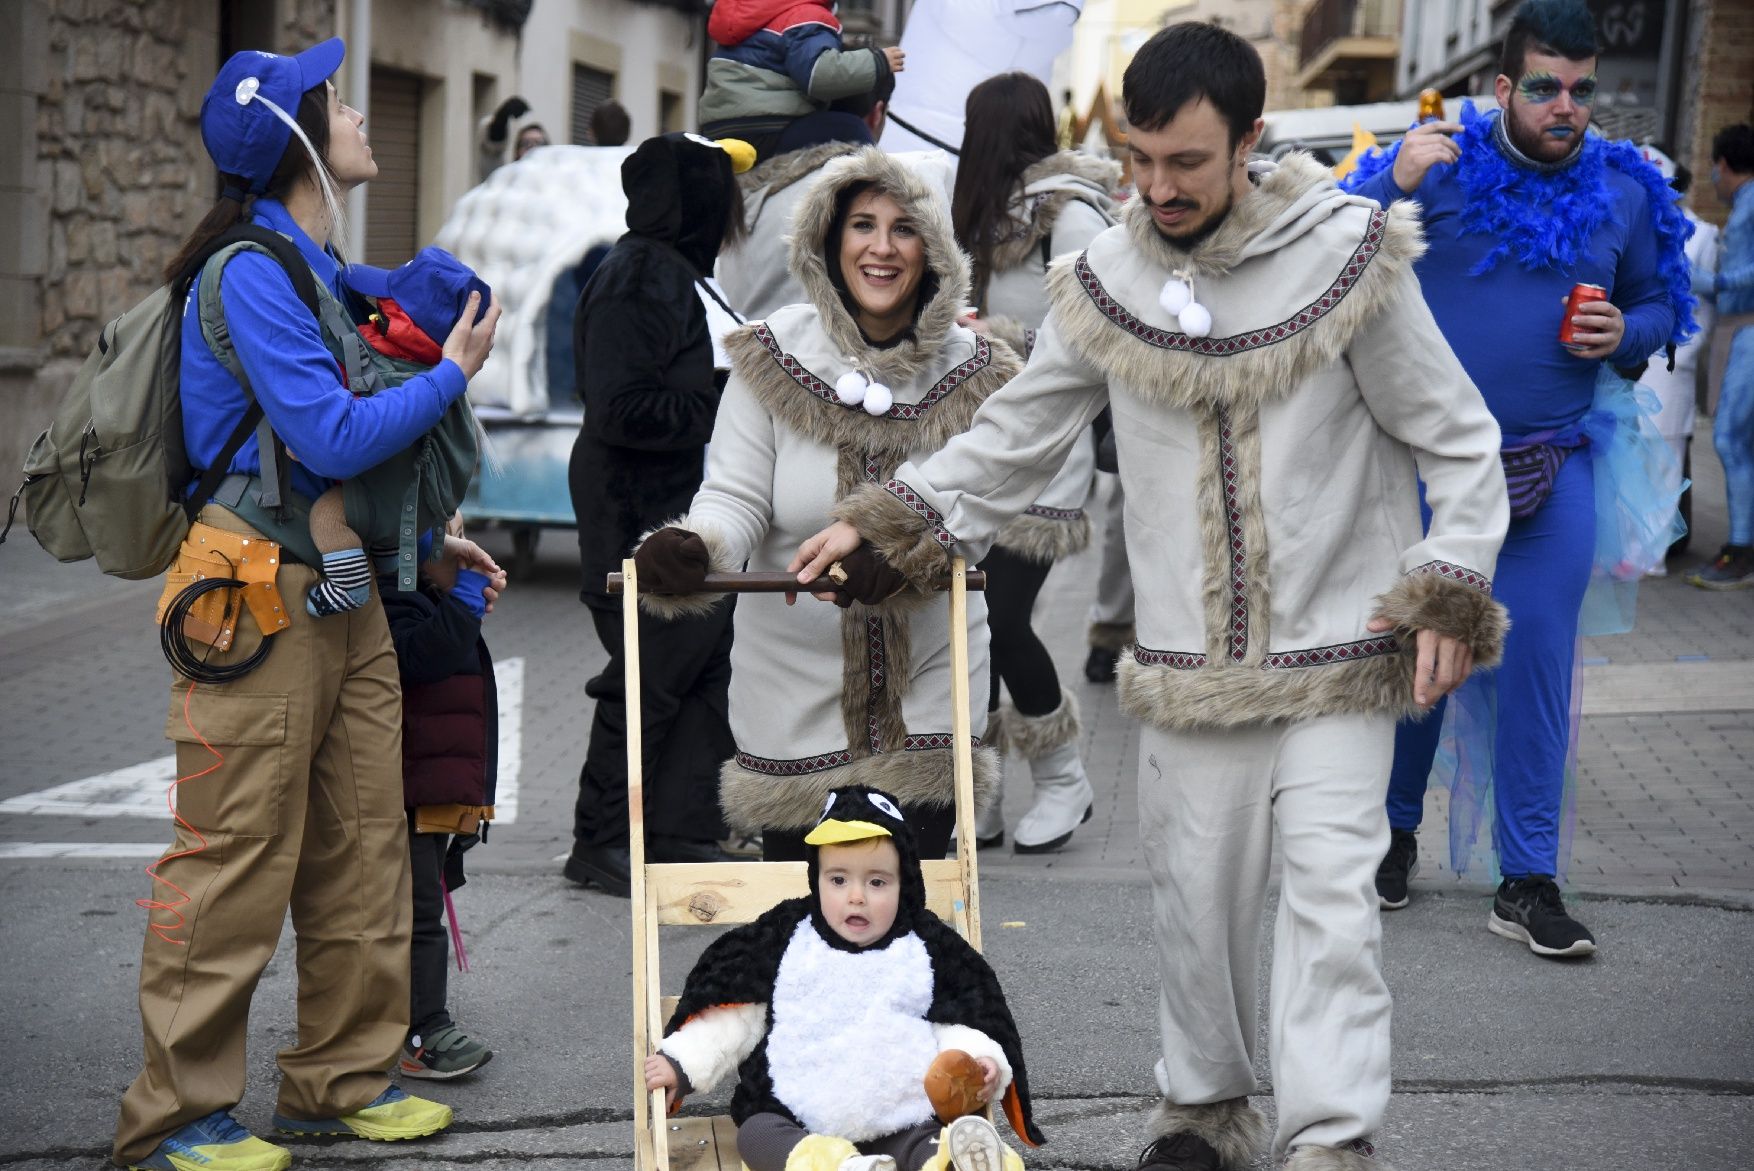 Totes les imatges del Carnaval d'Avinyó